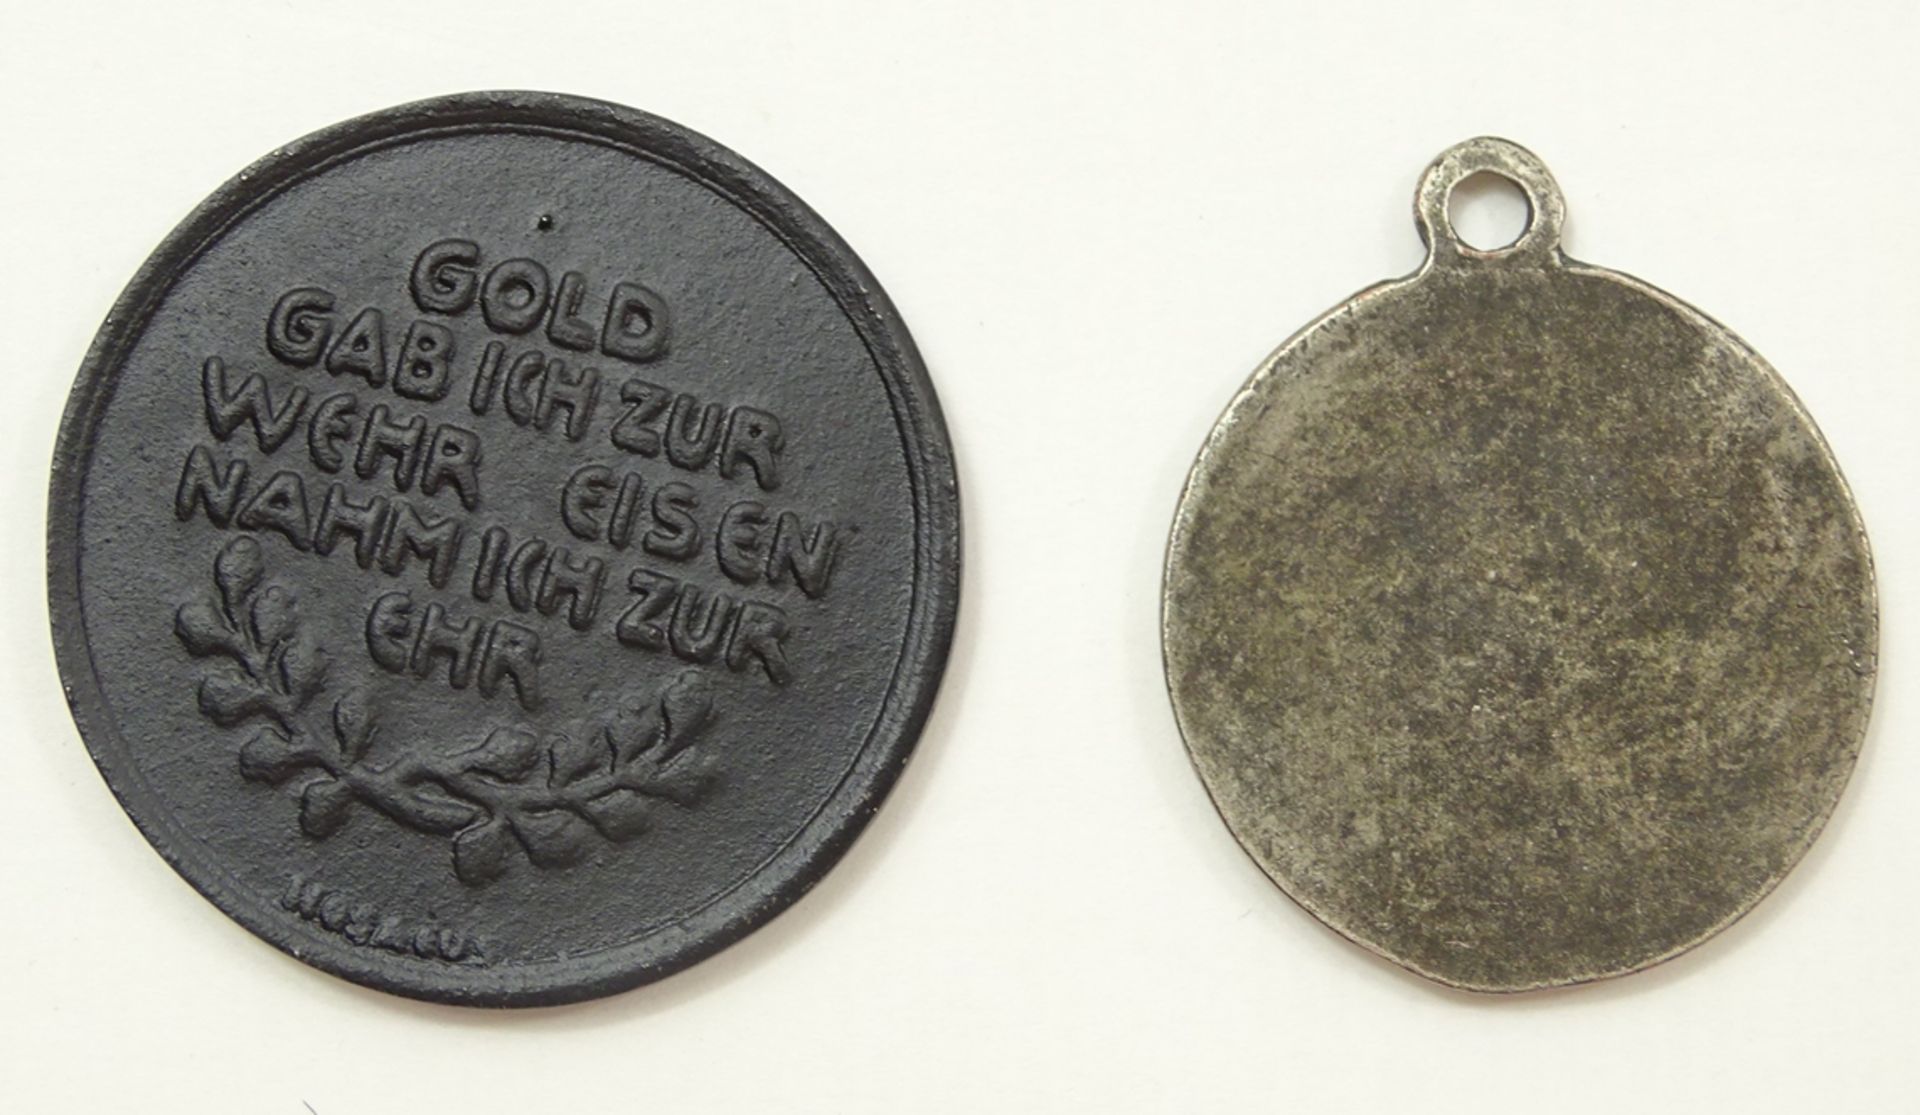 2 Medaillen, Gold für Eisen 1916 und 4. Gebirgsjäger Devision Enzian, Kuban-Brückenkopf 1940/44 - Bild 3 aus 3